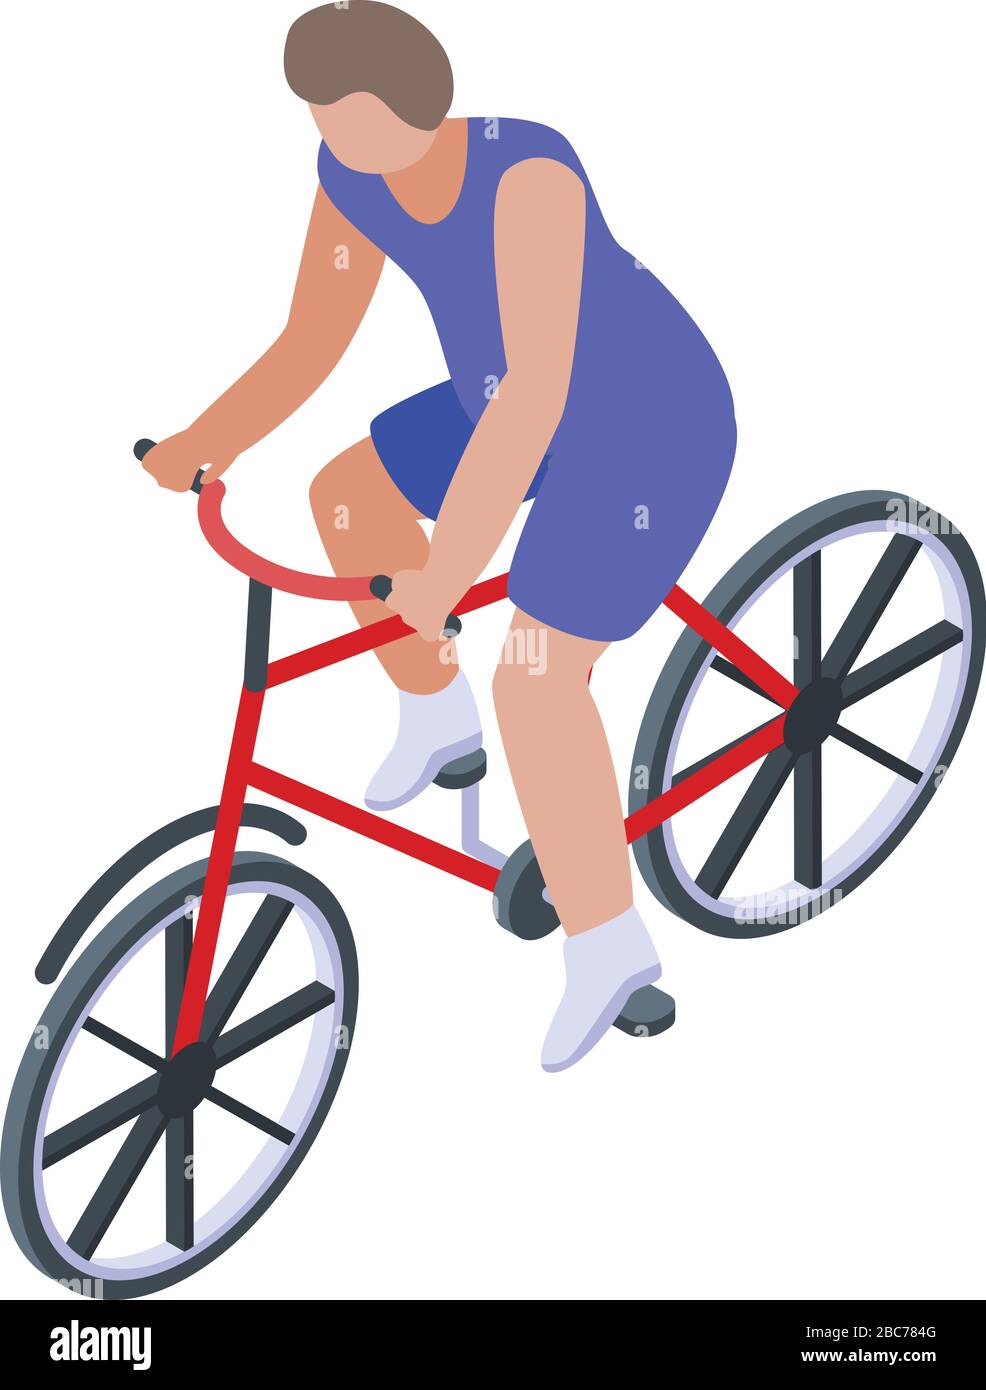 Hombre Bicicleta Y Fitness Stretching Antes De Ciclismo En Carretera Al  Aire Libre Con Entrenamiento Para Carreras O Competiciones Imagen de  archivo - Imagen de bici, muscular: 259835573